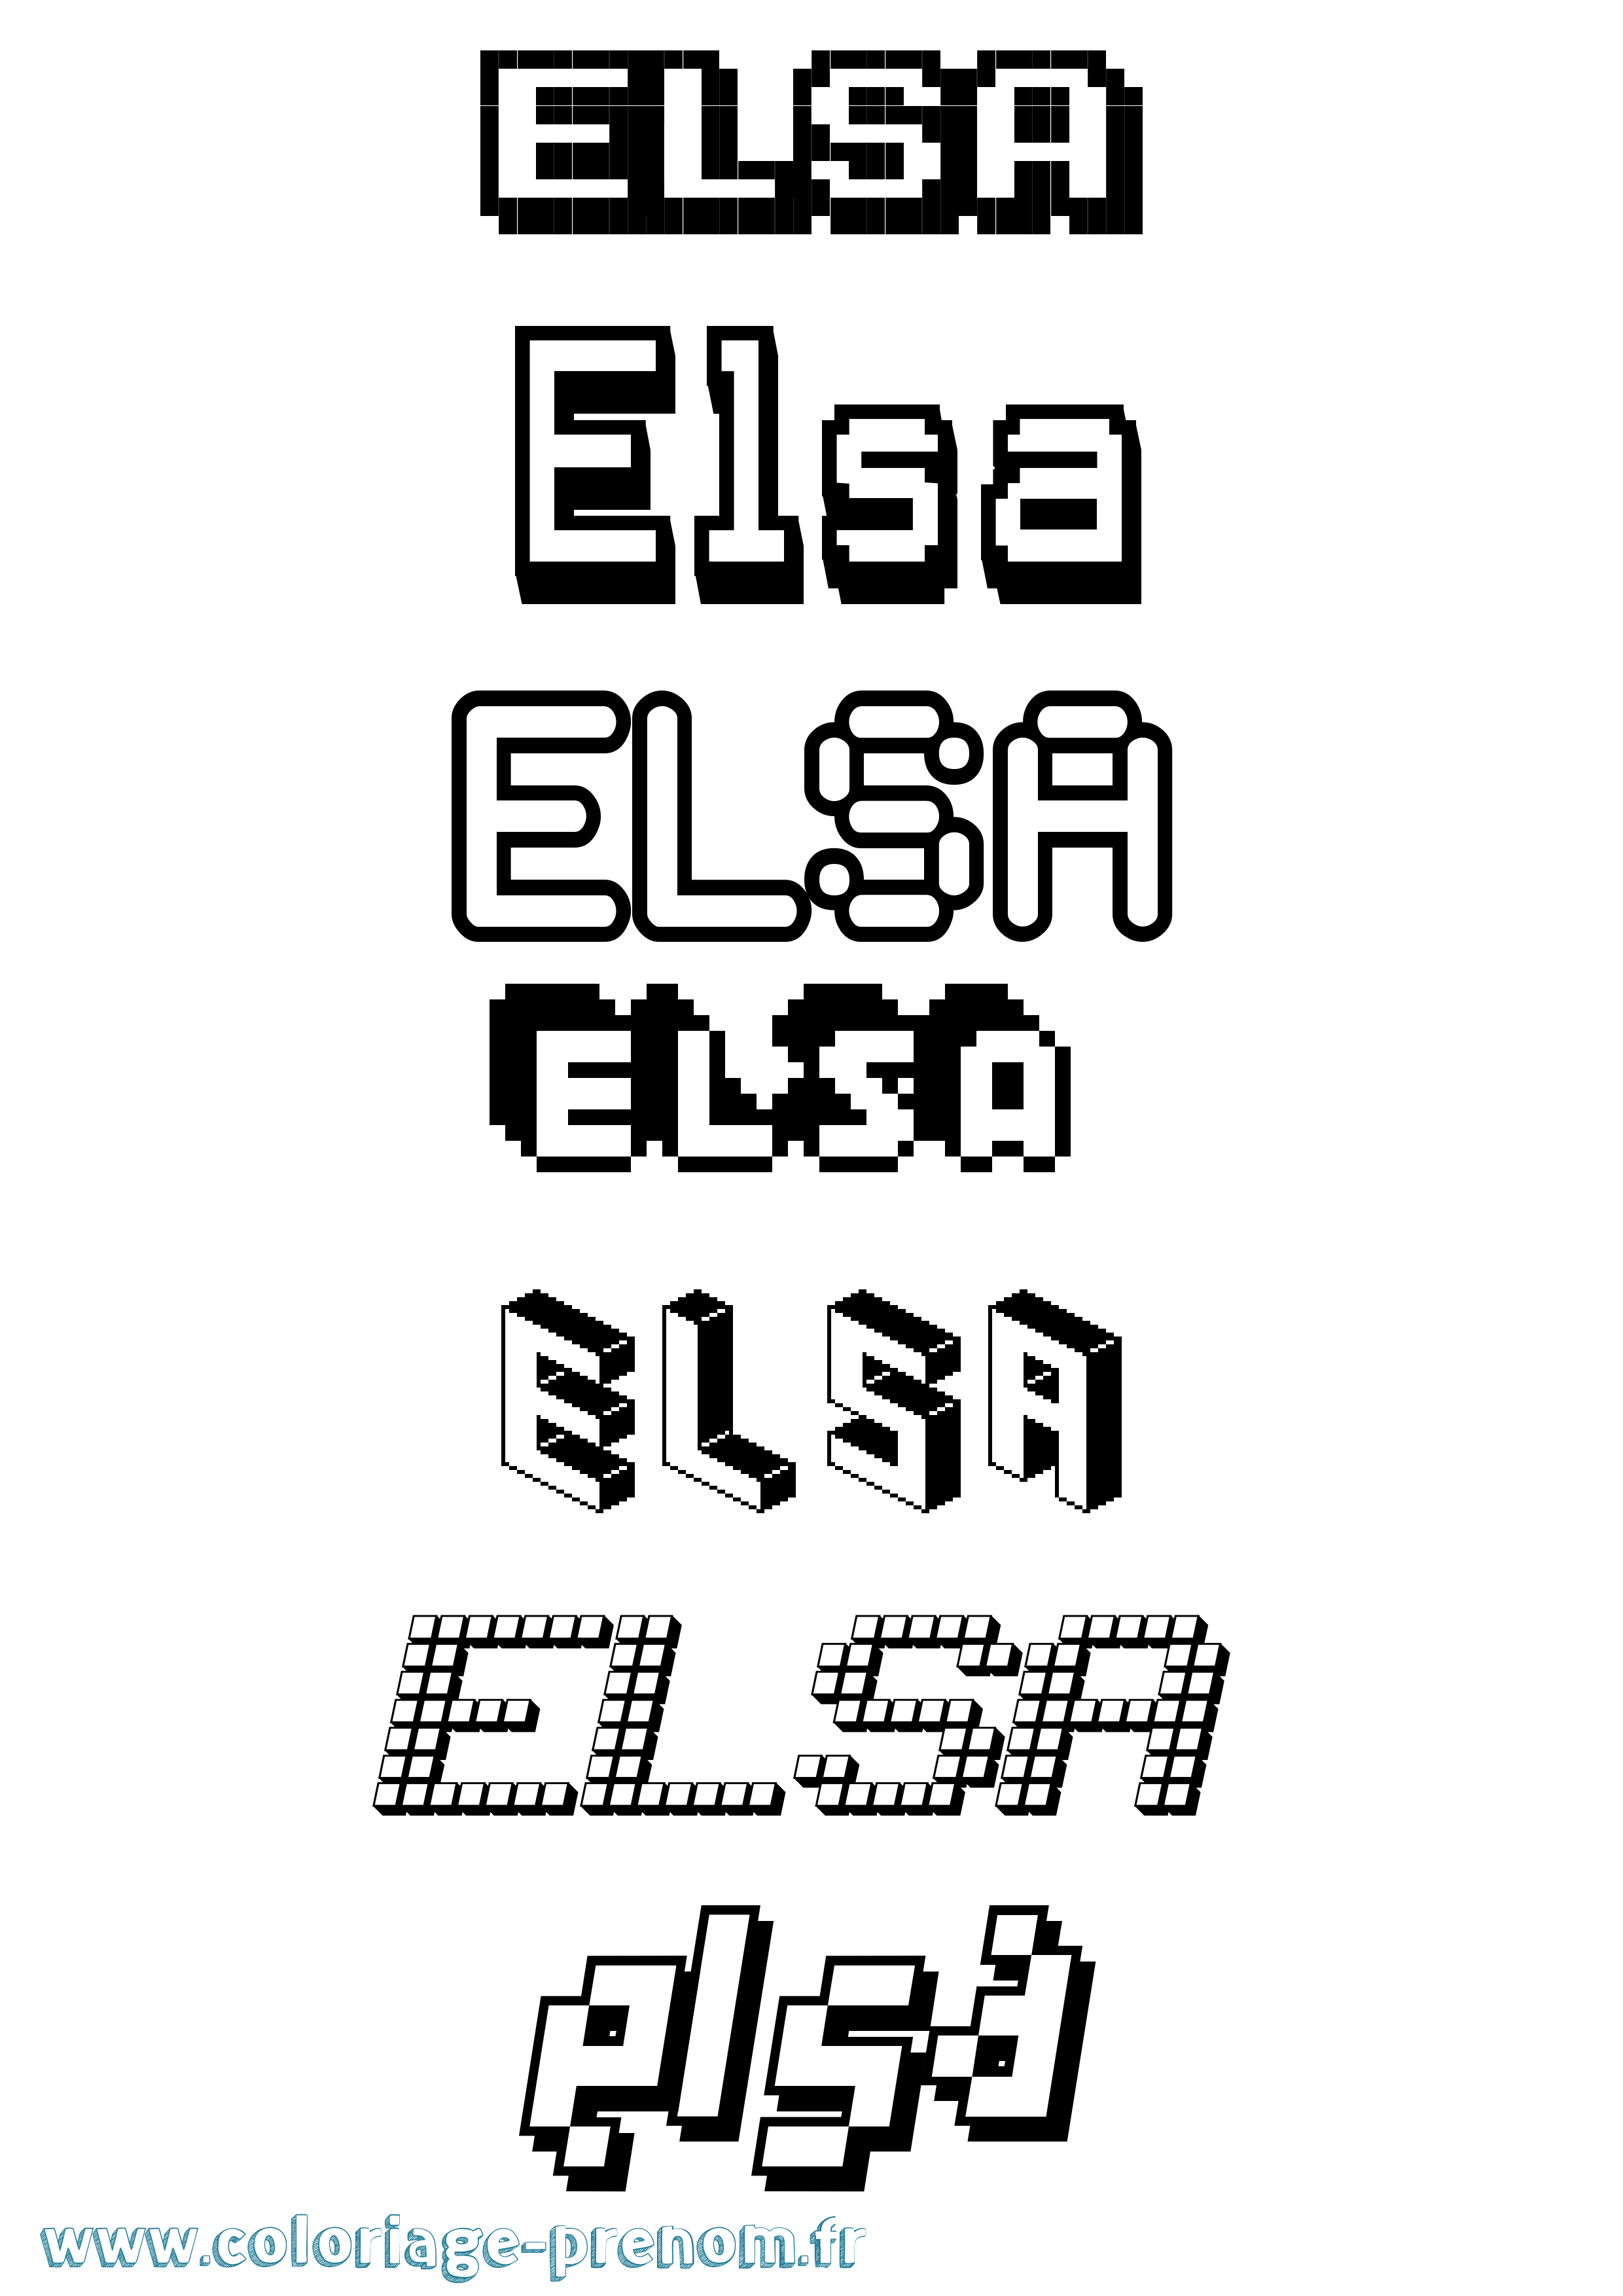 Coloriage prénom Elsa